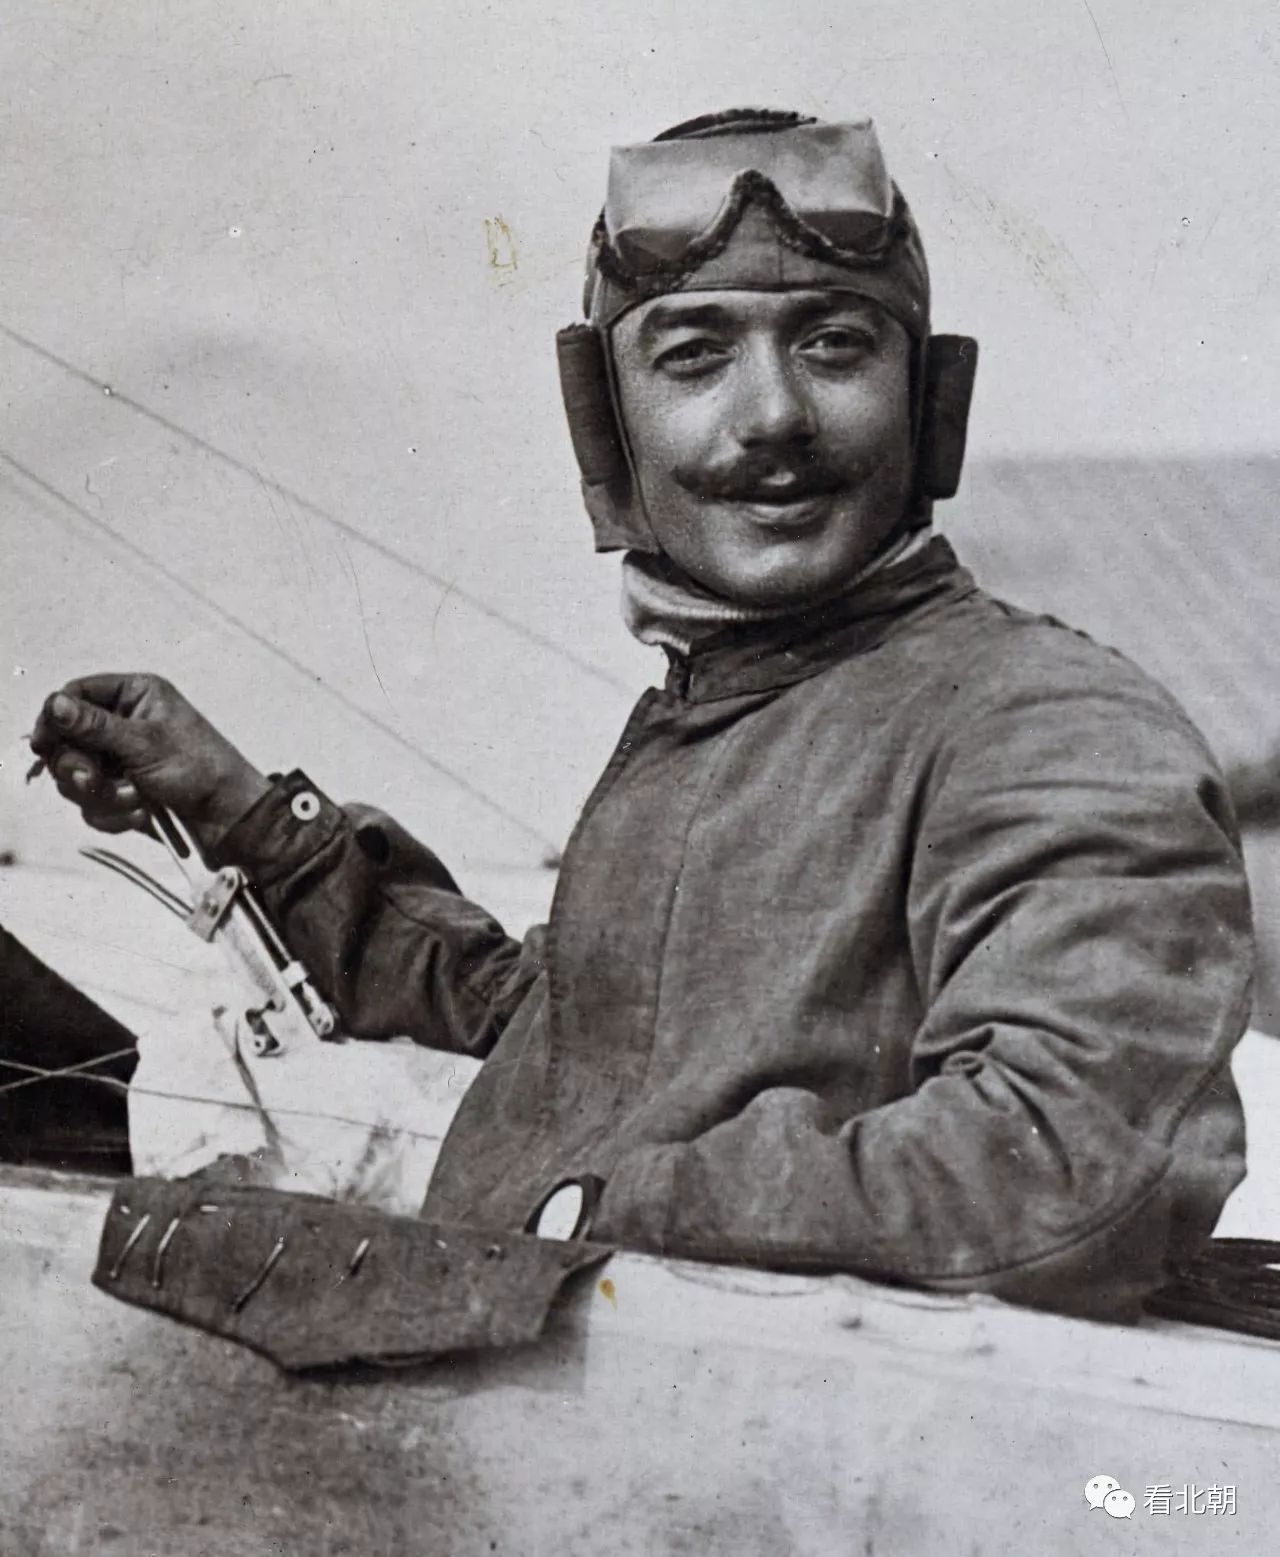 老照片:被自己徒弟杀死的世界第一位王牌飞行员长啥样?